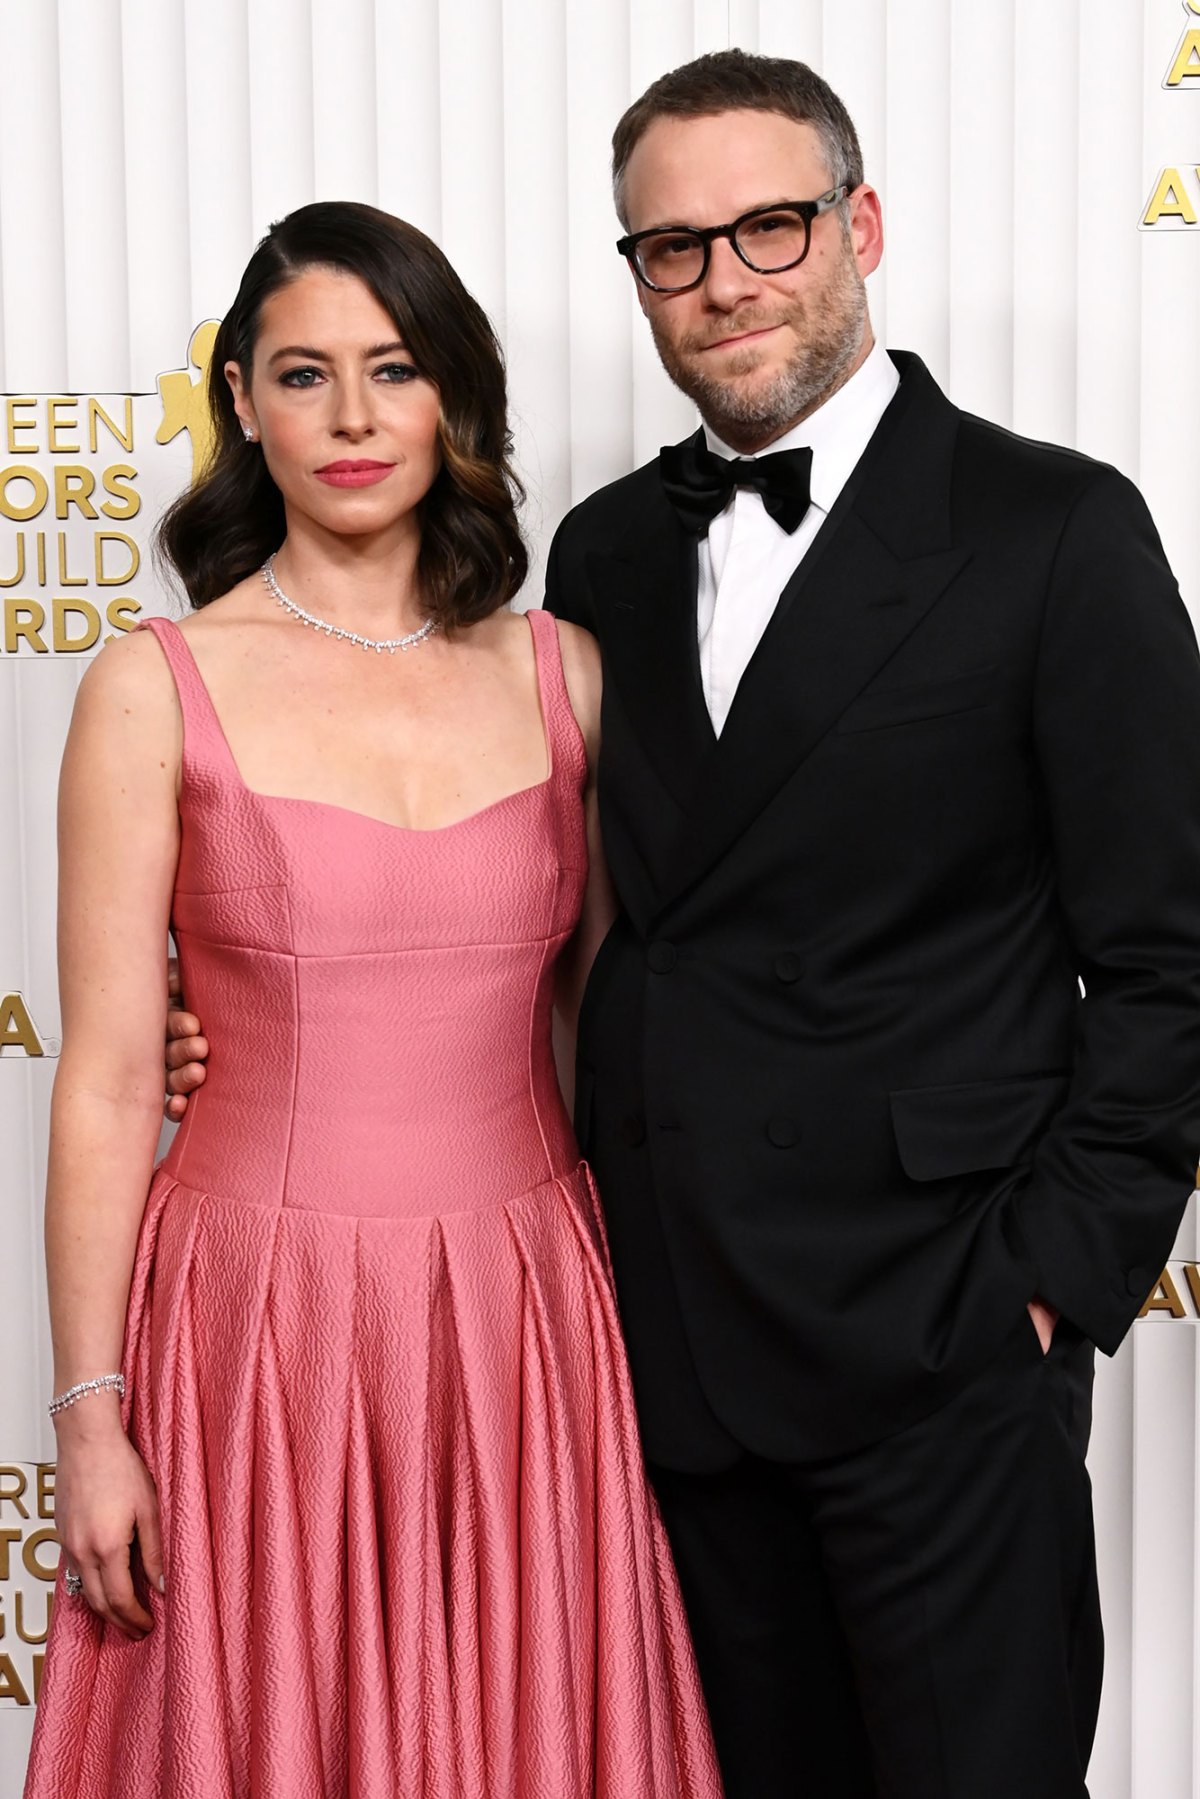 Seth Rogen otwarcie powiedział, że nie ma dzieci z żoną Lauren Miller, która „pomaga mu odnieść sukces” w jego różowej sukni zawodowej